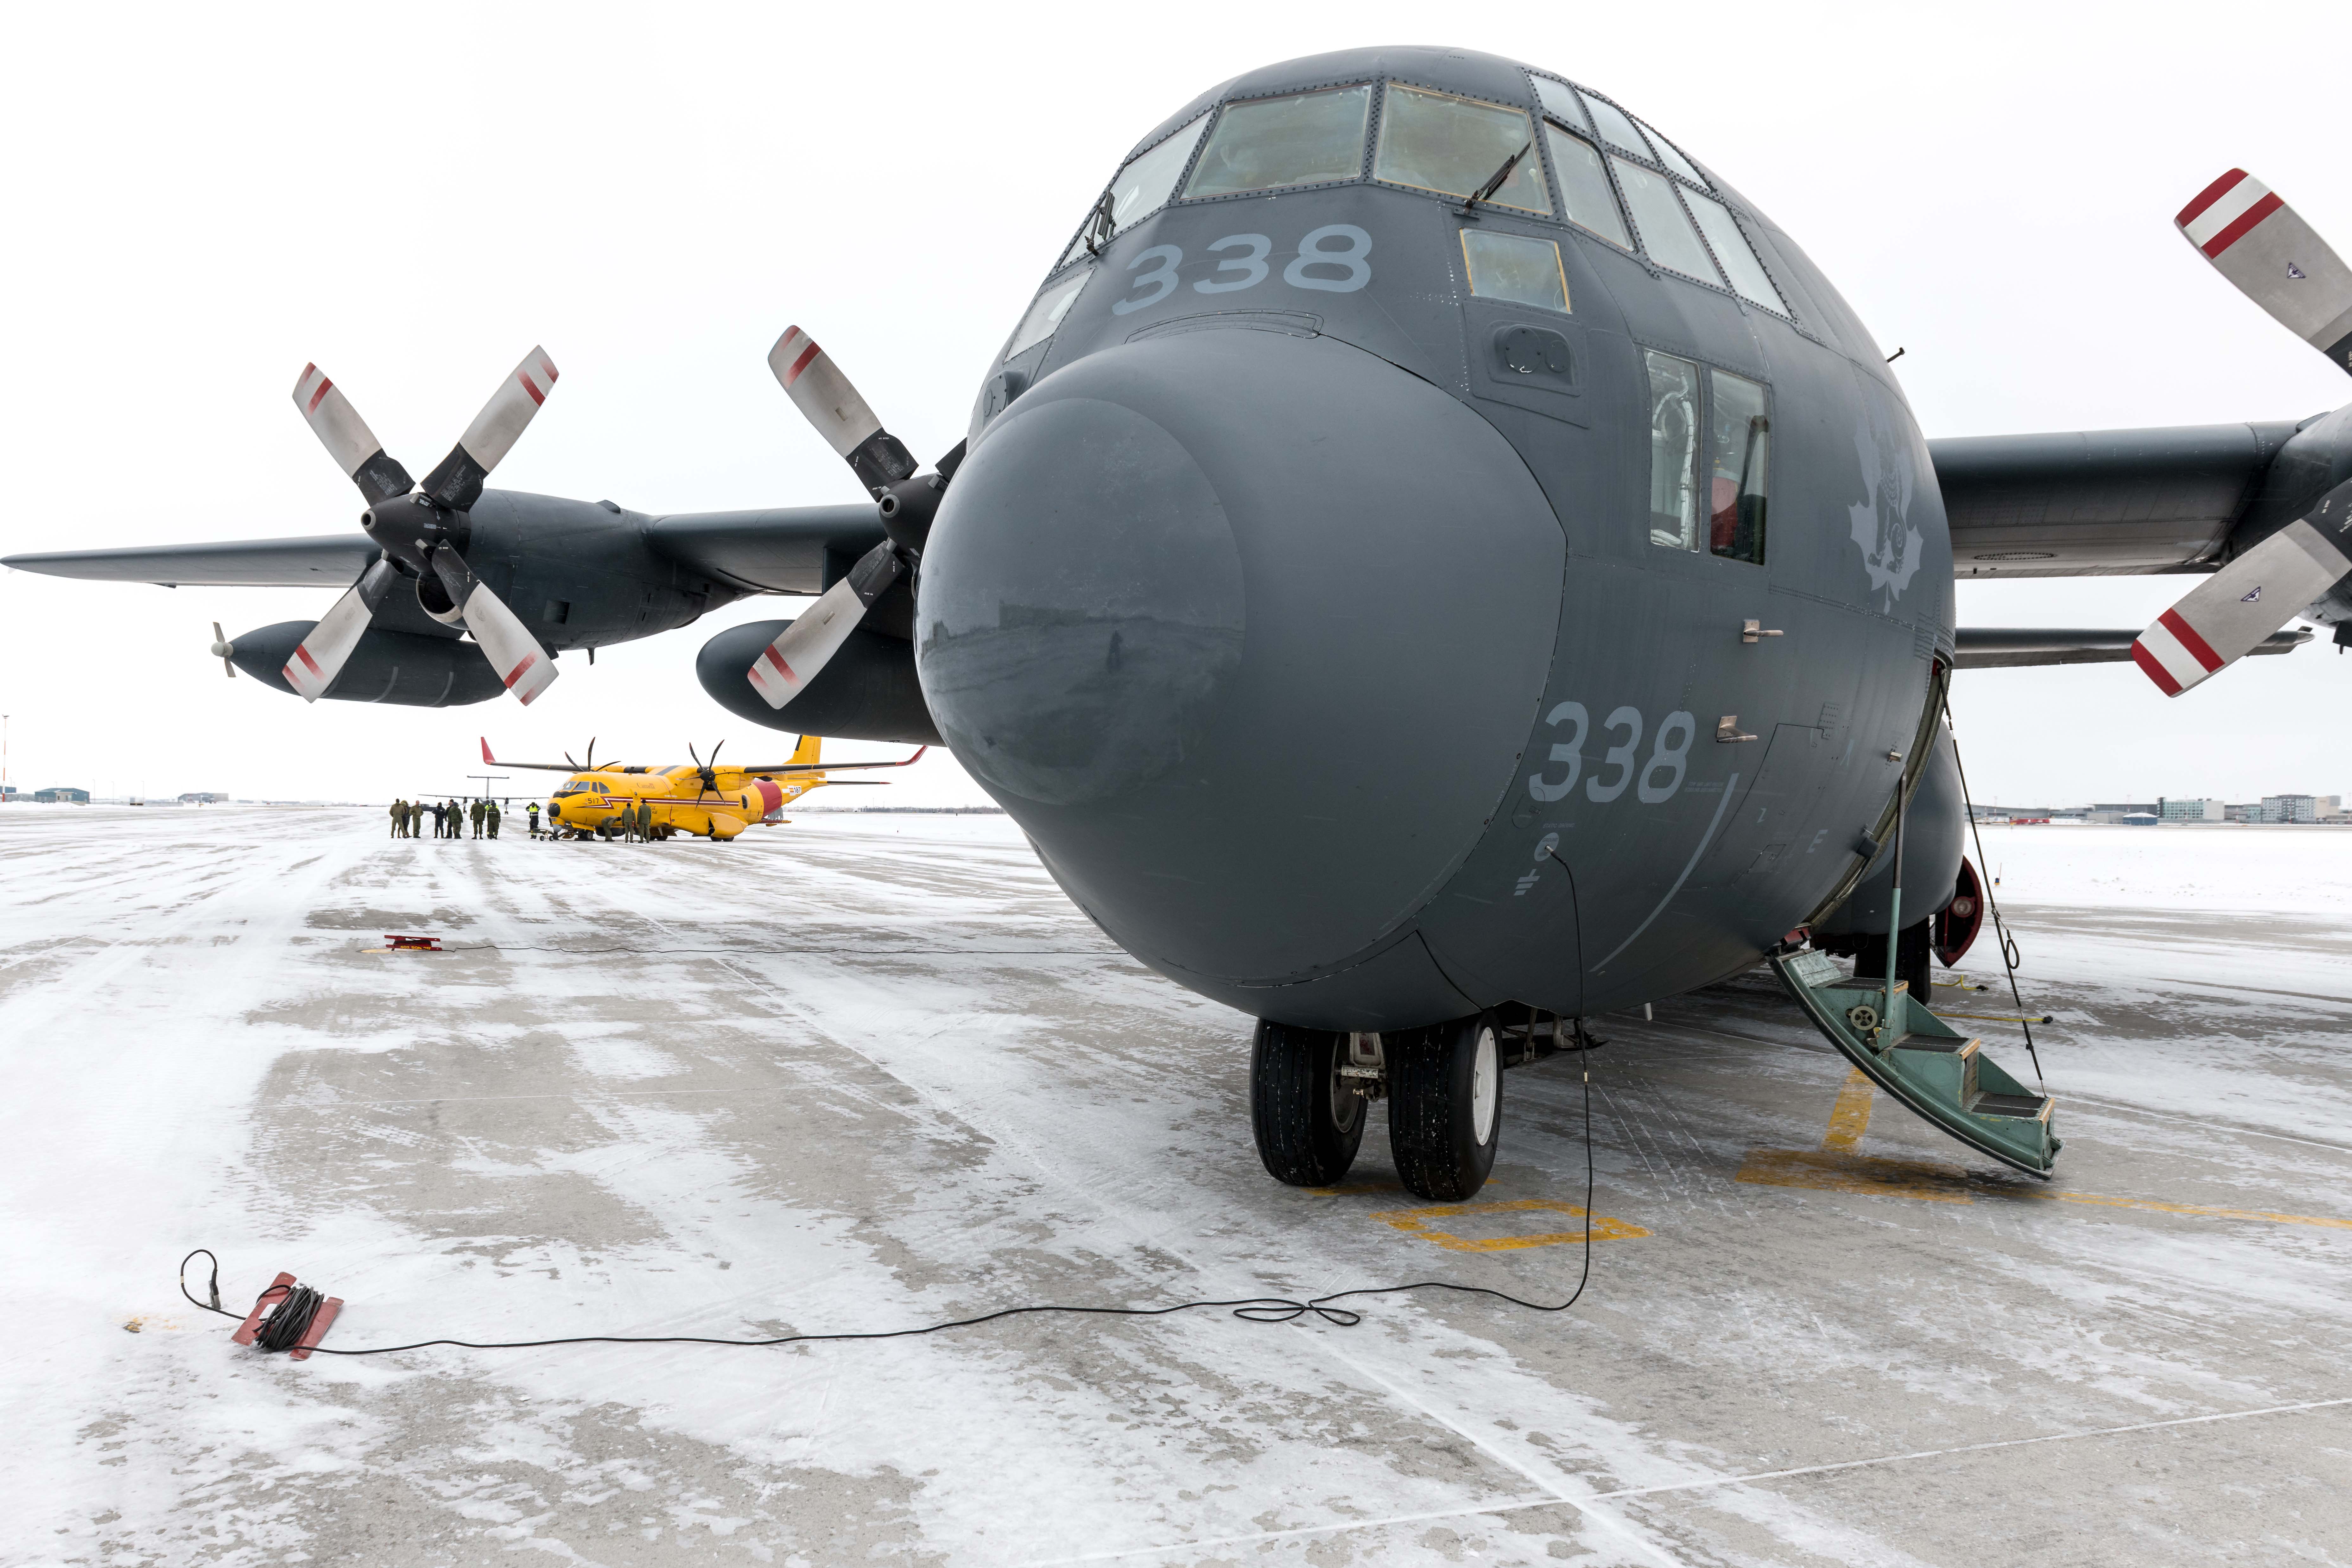 Les Techniciens de soutien des opérations aériennes peuvent commencer à travailler sur des aéronefs, comme ce CC-130 Hercules, beaucoup plus tôt que certains se joignent à d'autres métiers. PHOTO : Sgt Daren Kraus, 17e Escadre à Winnipeg.